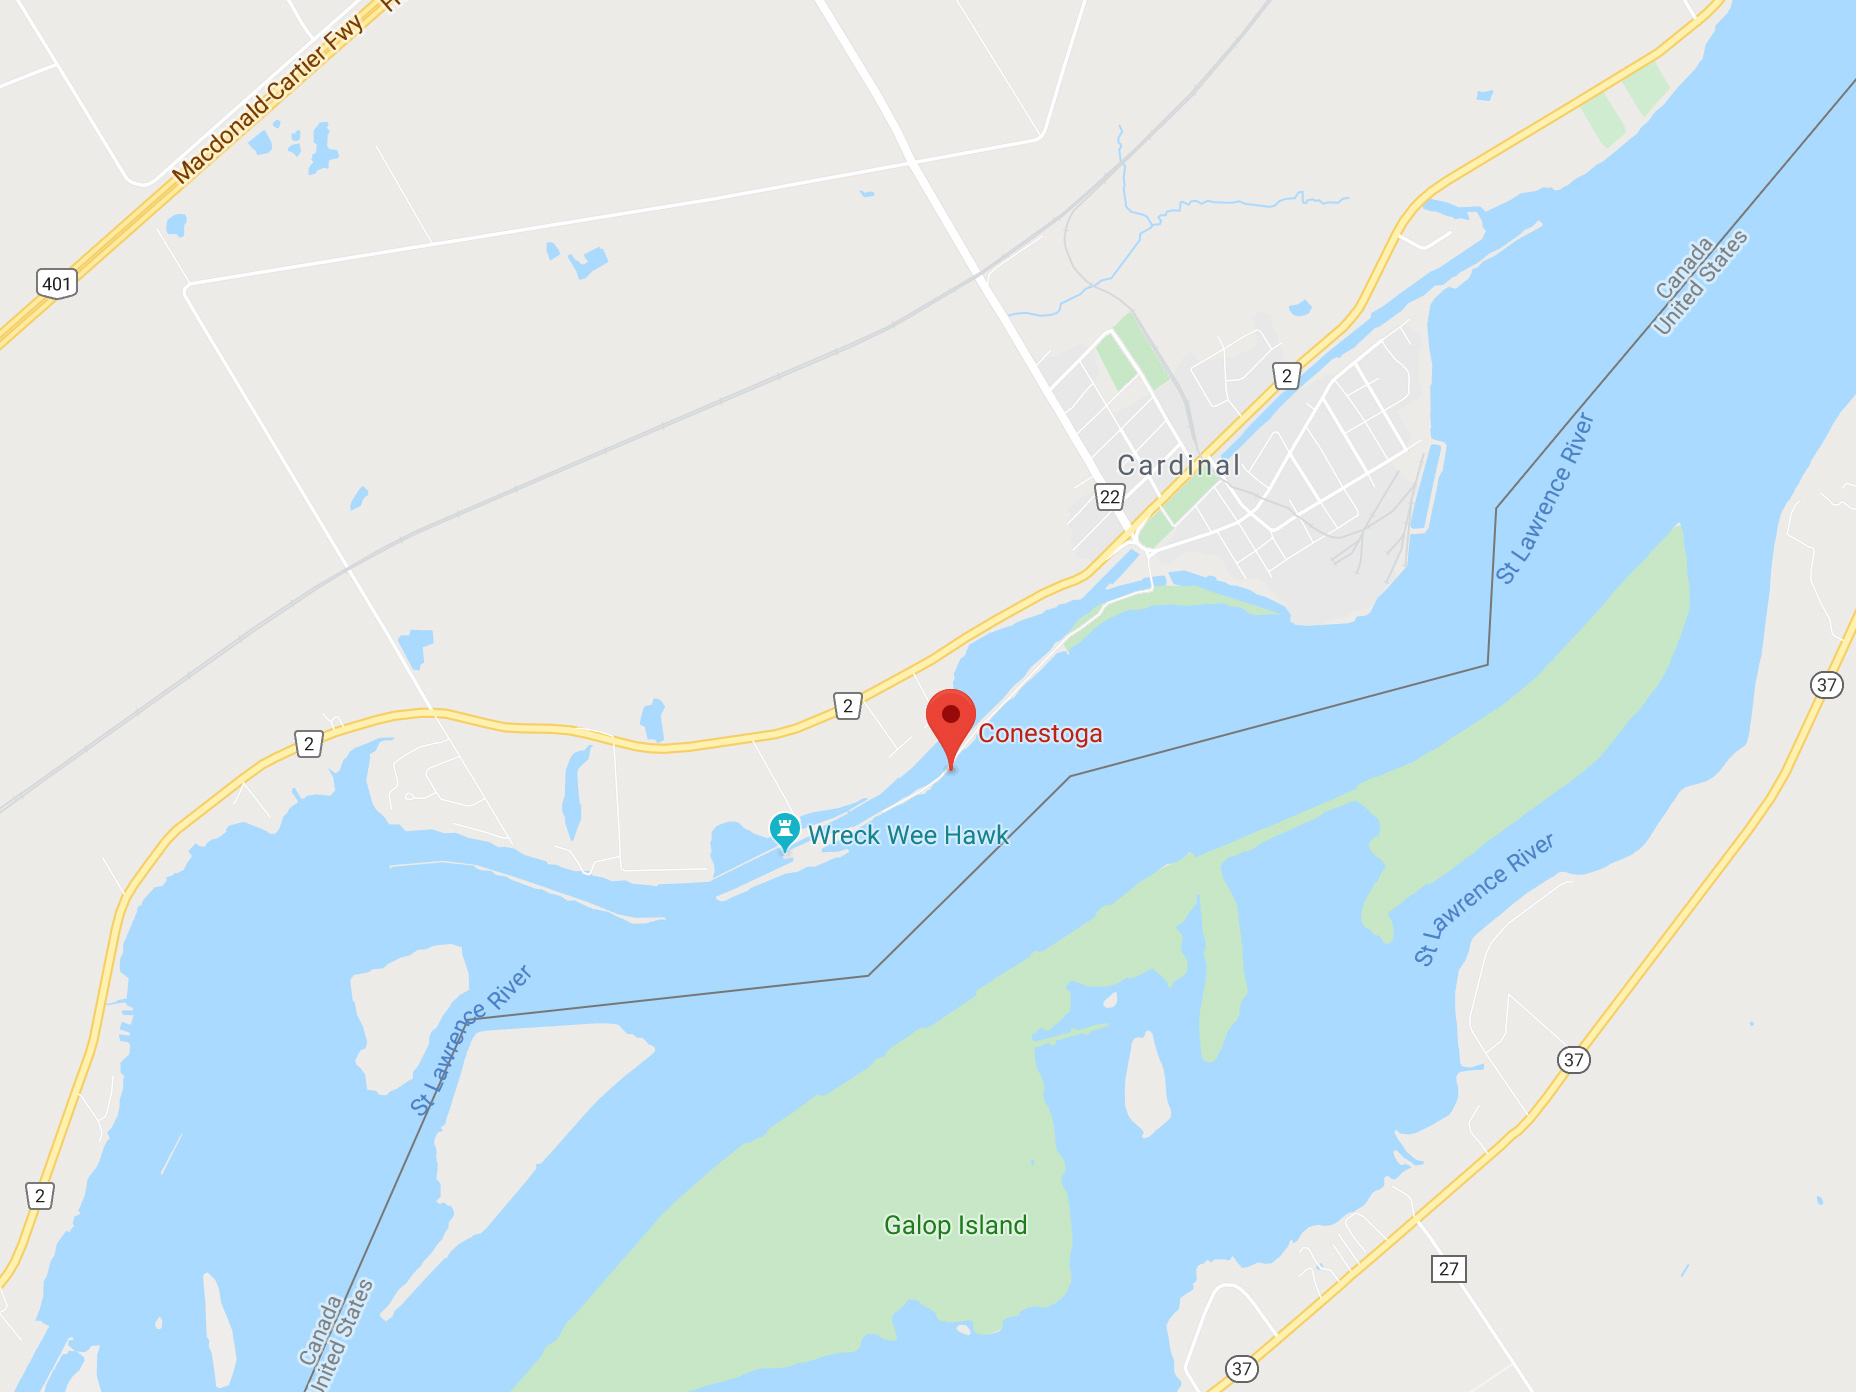 Conestoga Shipwreck Google Map Shore Diving Directions